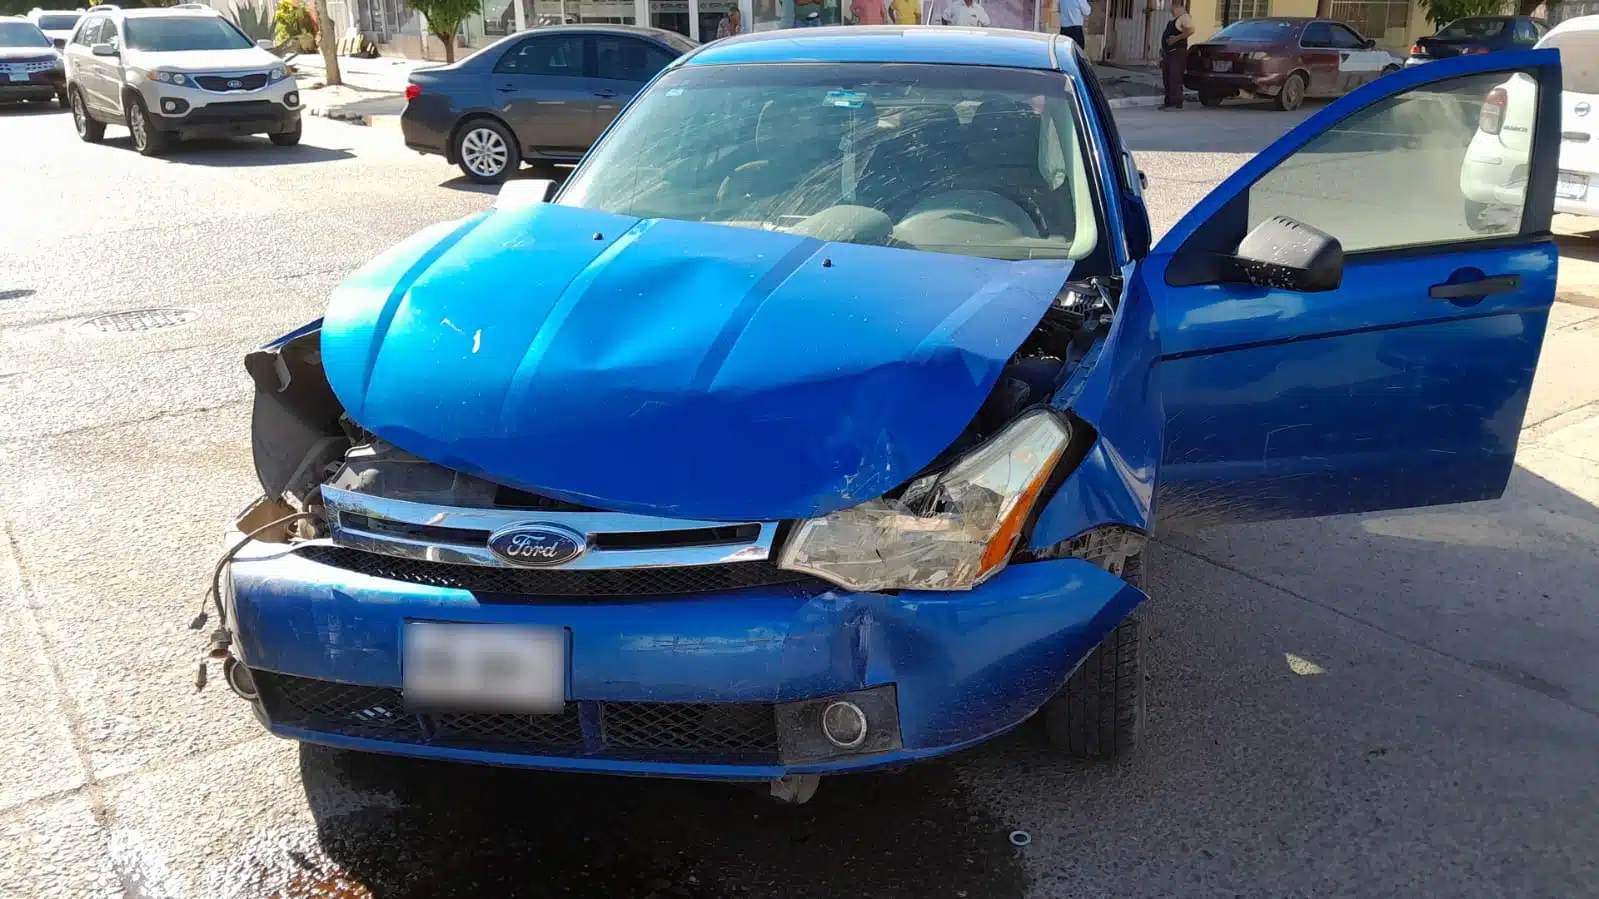 Automóvil Ford, color azul, con daños en la carrocería